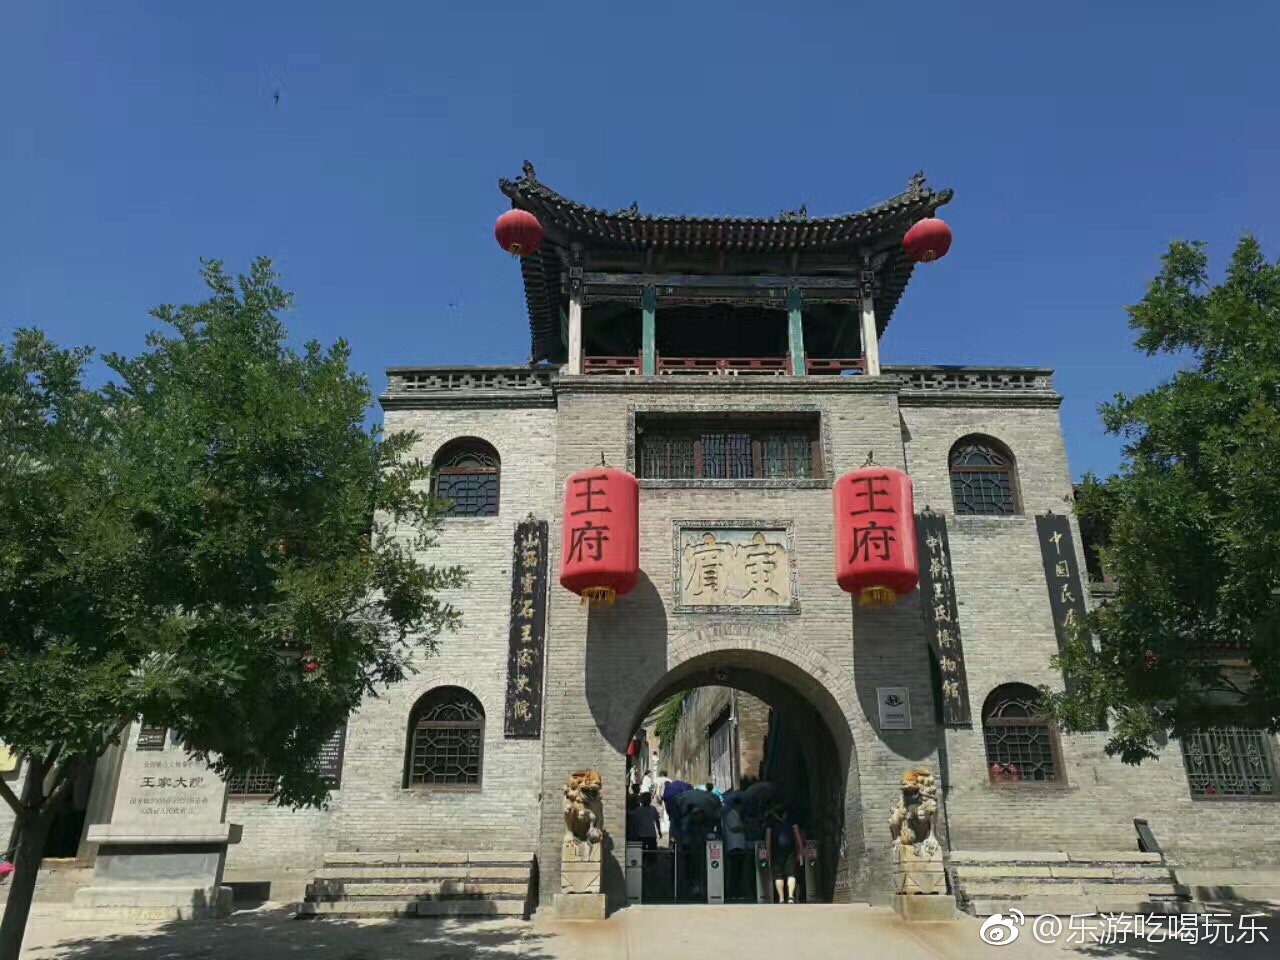 王家大院是由静升王氏家族经明清两朝,历300余年修建而成